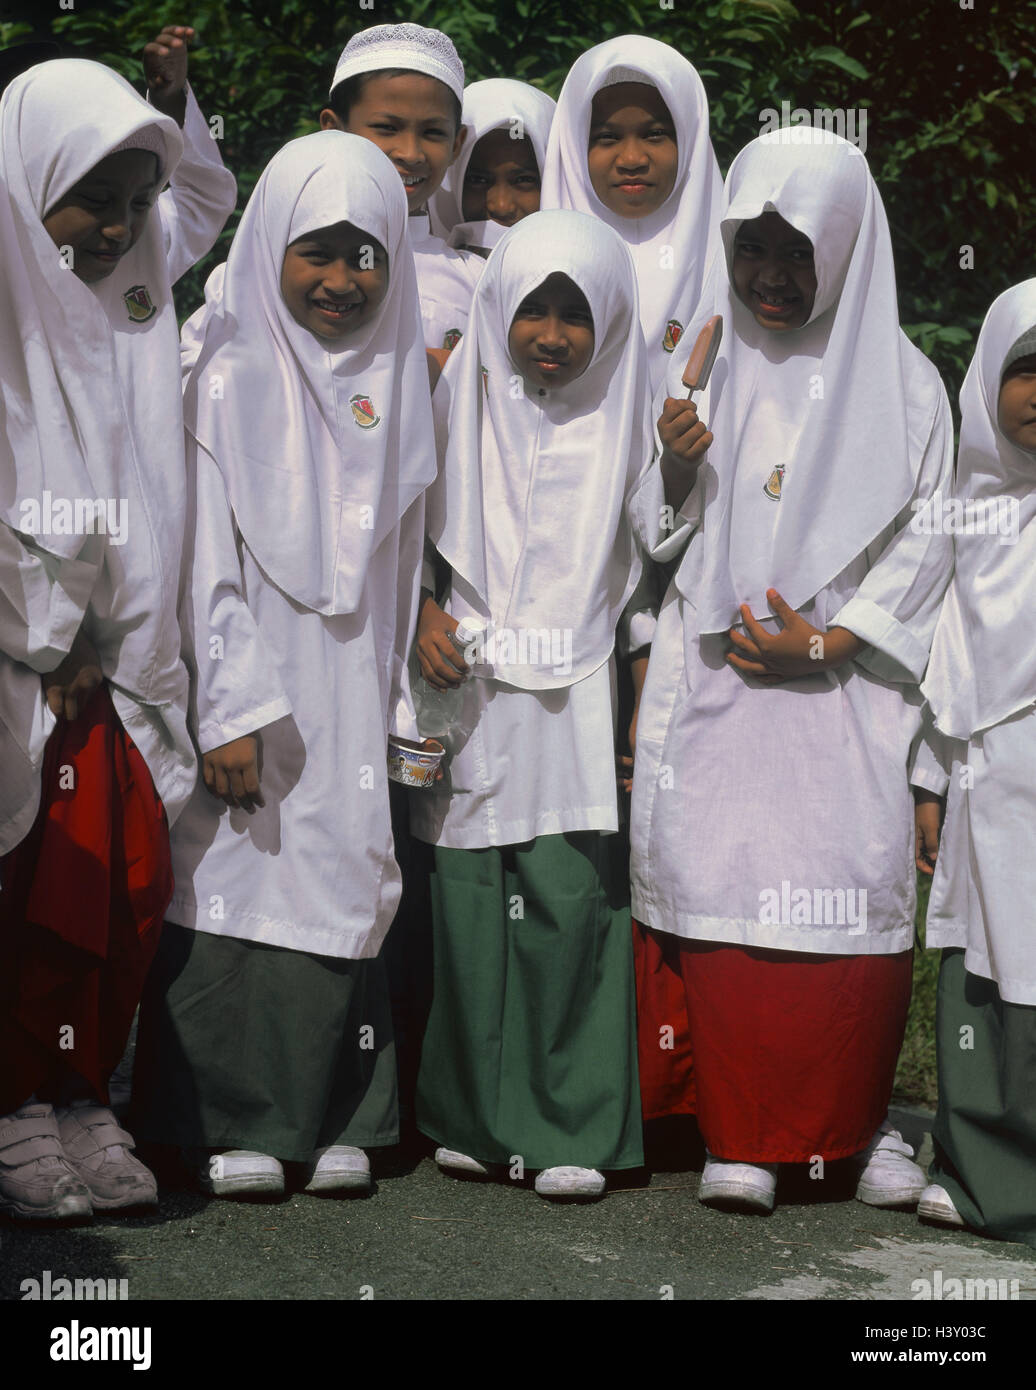 Malaysia, scuola bambini musulmani, foto di gruppo, Asia, uniformi scolastiche, vestiti, tradizione, veli, veli, scolari, le ragazze e i ragazzi, ridere, felice, esterno Foto Stock